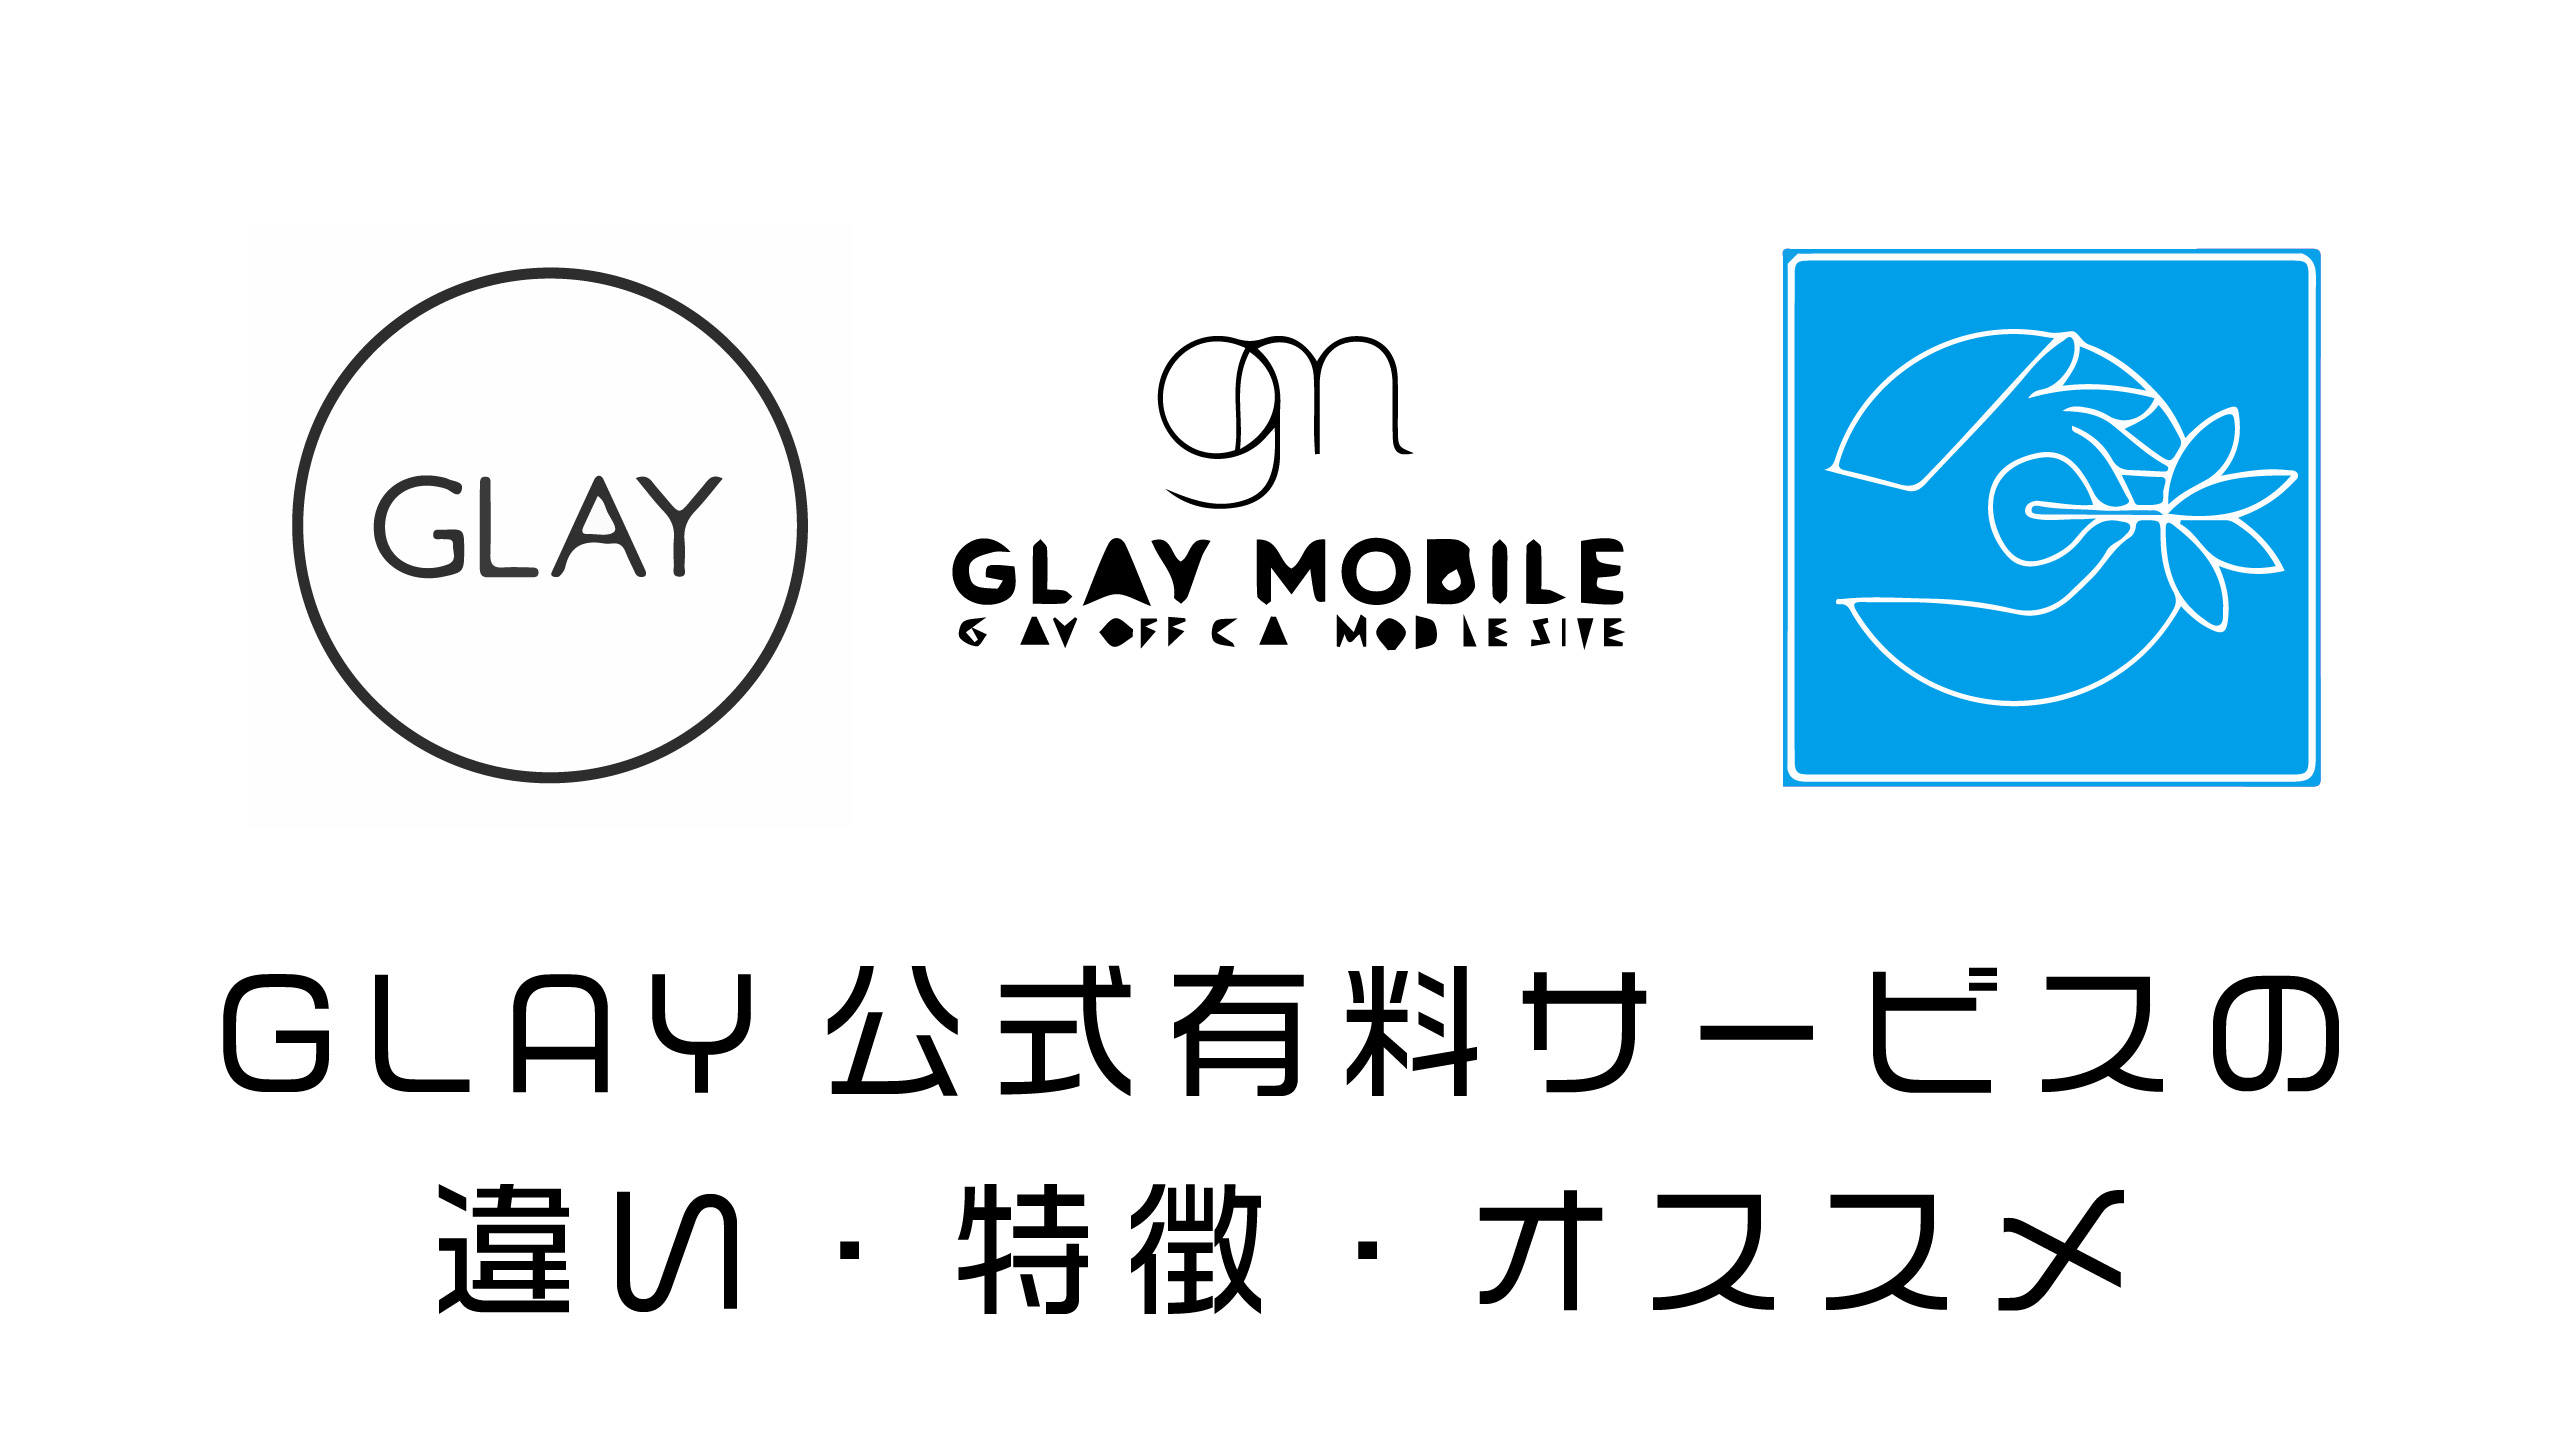 GLAYファンクラブ、GLAYアプリ、GLAY MOBILE、何が違うの